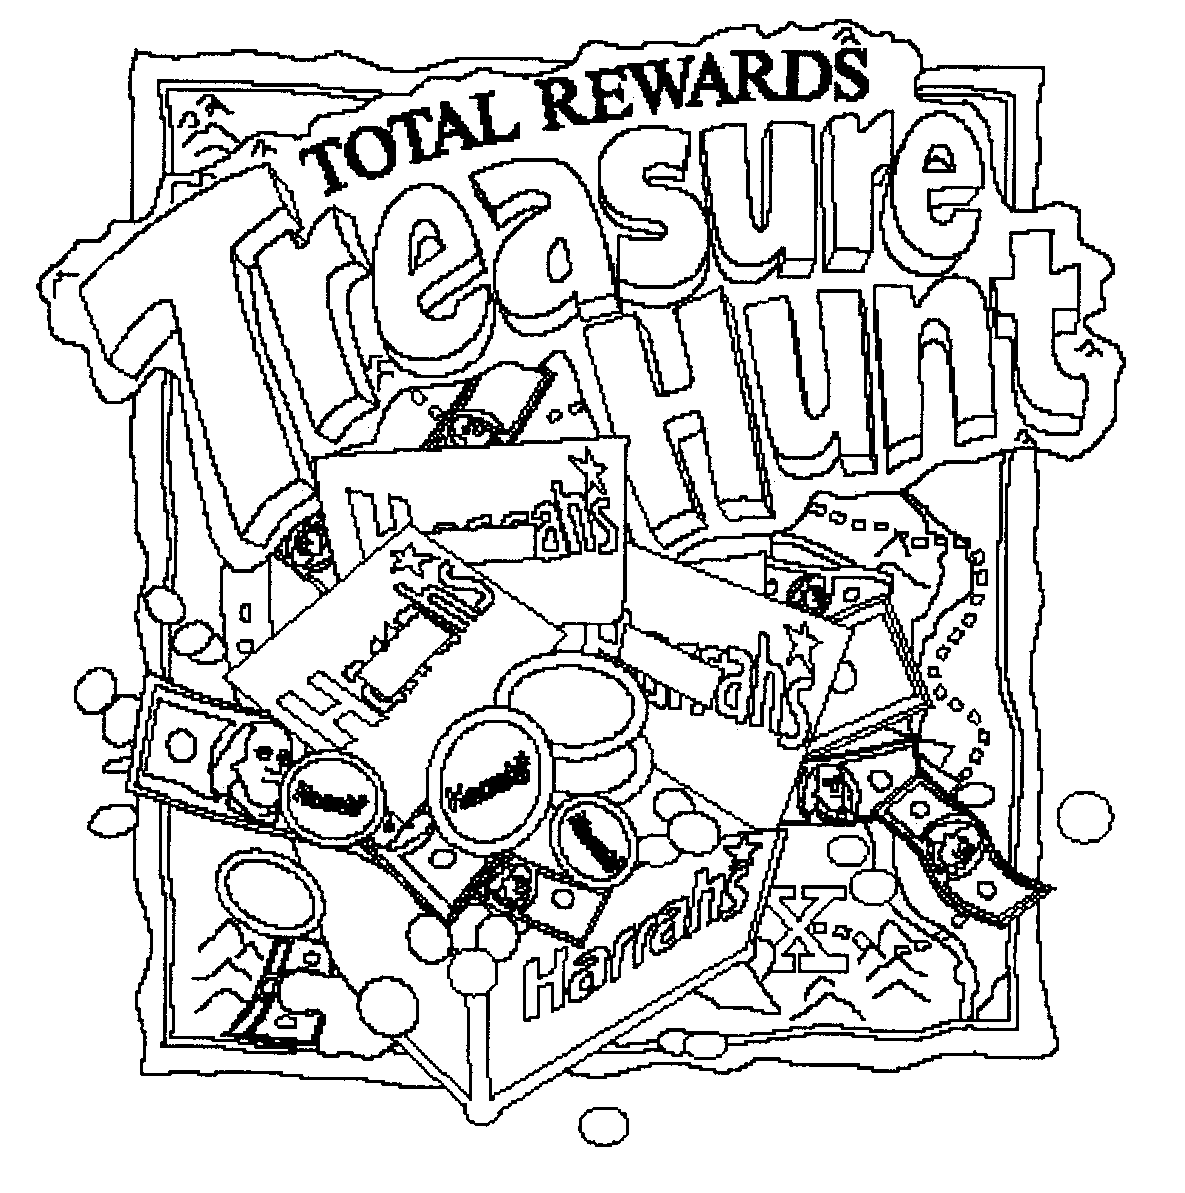  TOTAL REWARDS TREASURE HUNT